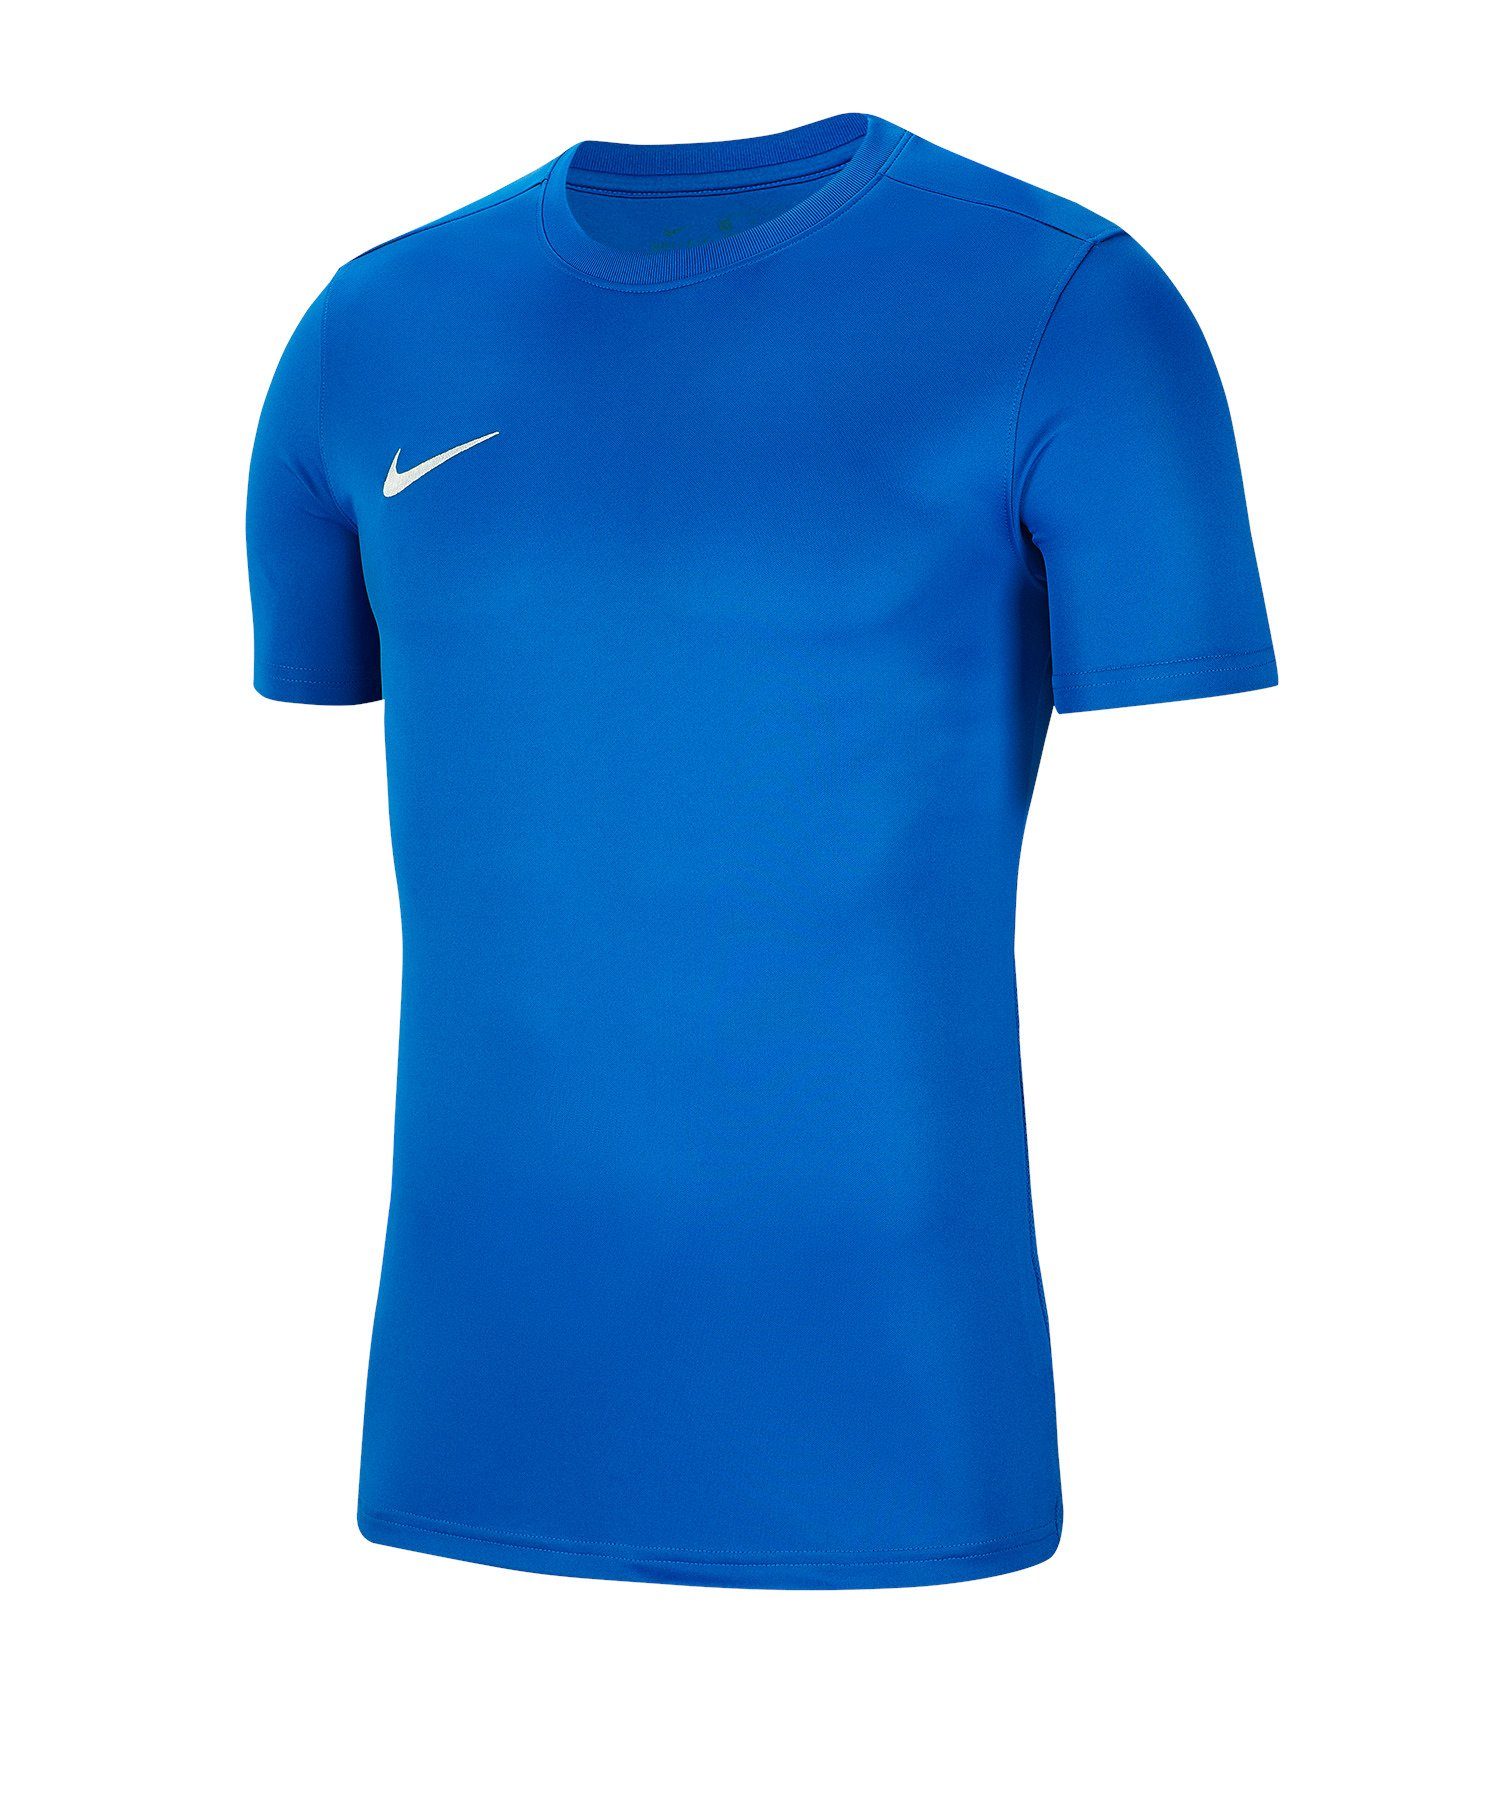 VII Fußballtrikot Nike blau kurzarm Trikot Park